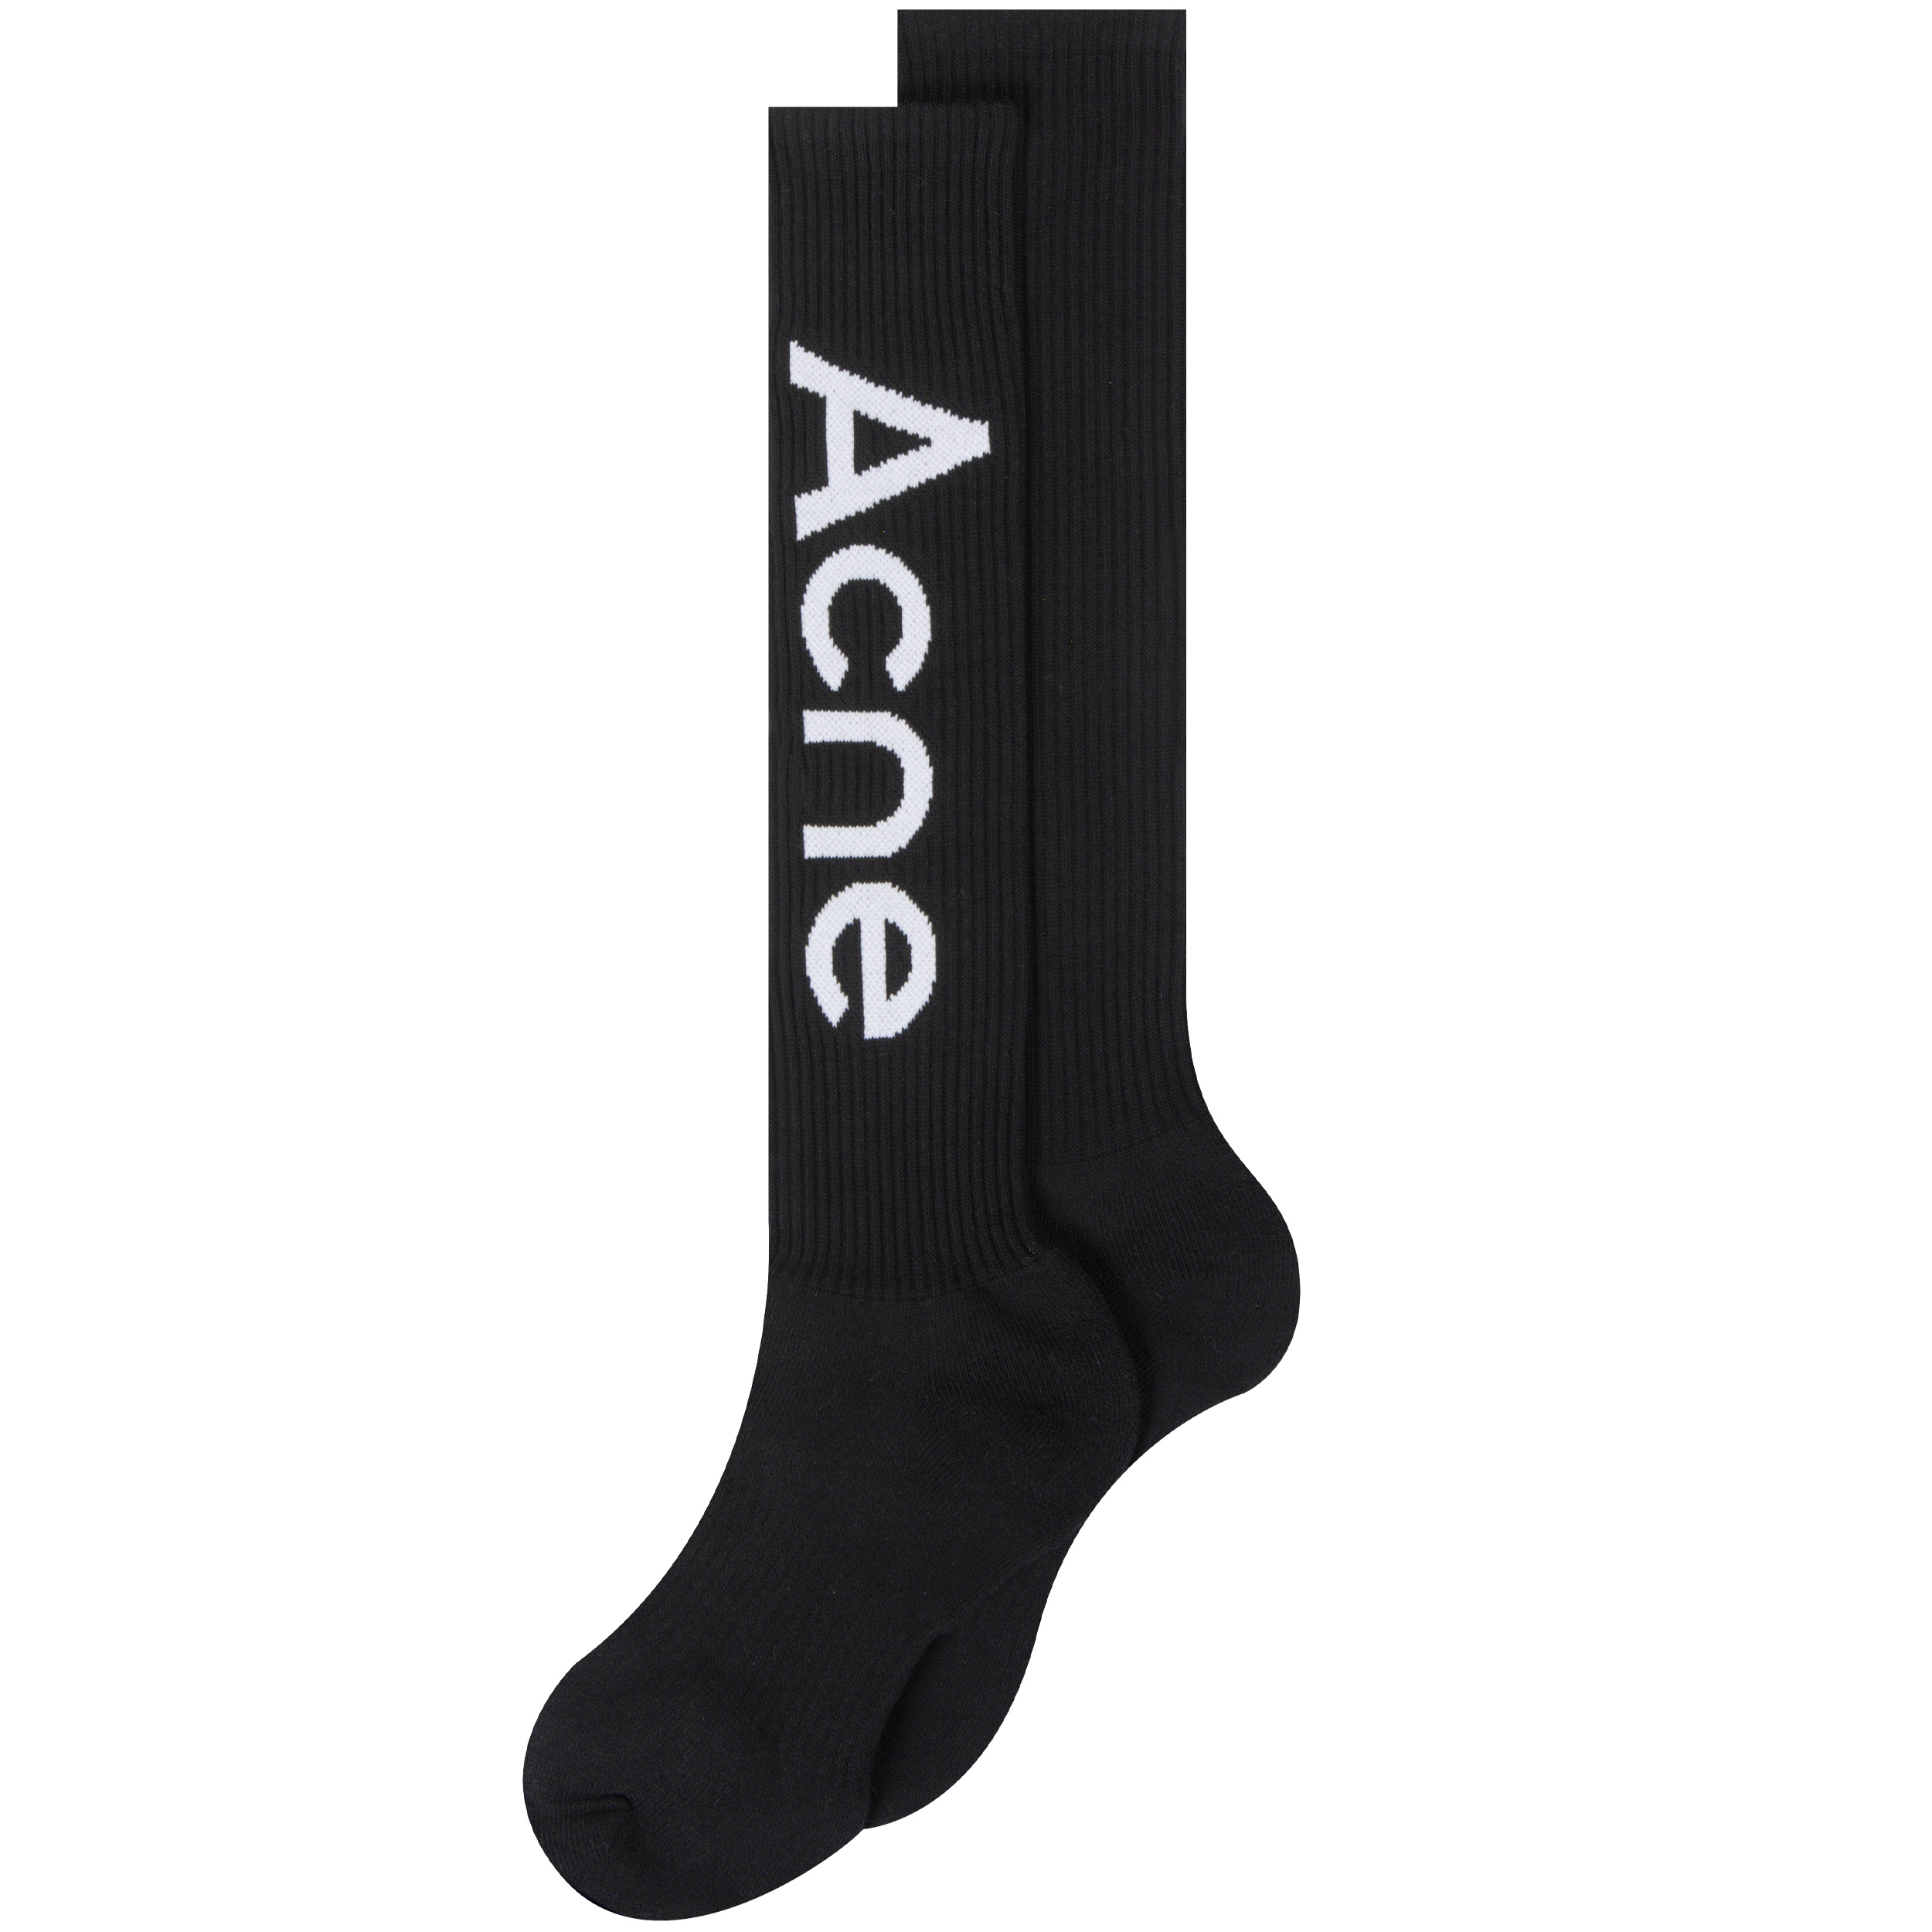 Acne Studios 'Logo' Socks Black